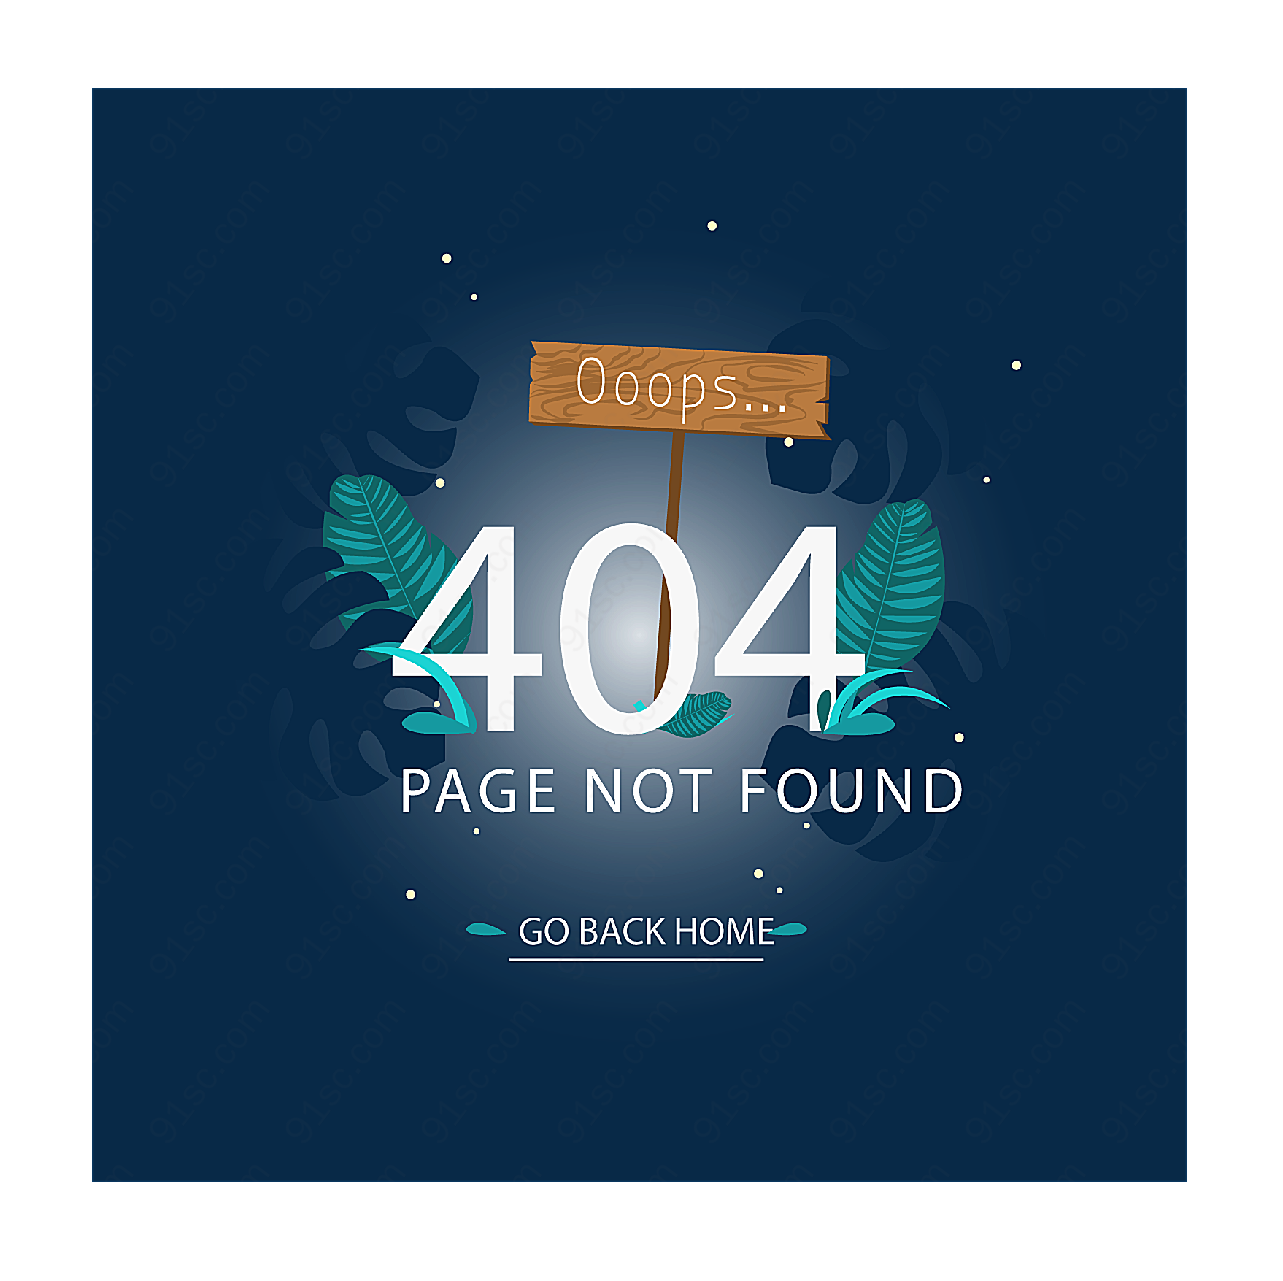 404错误页面平面广告